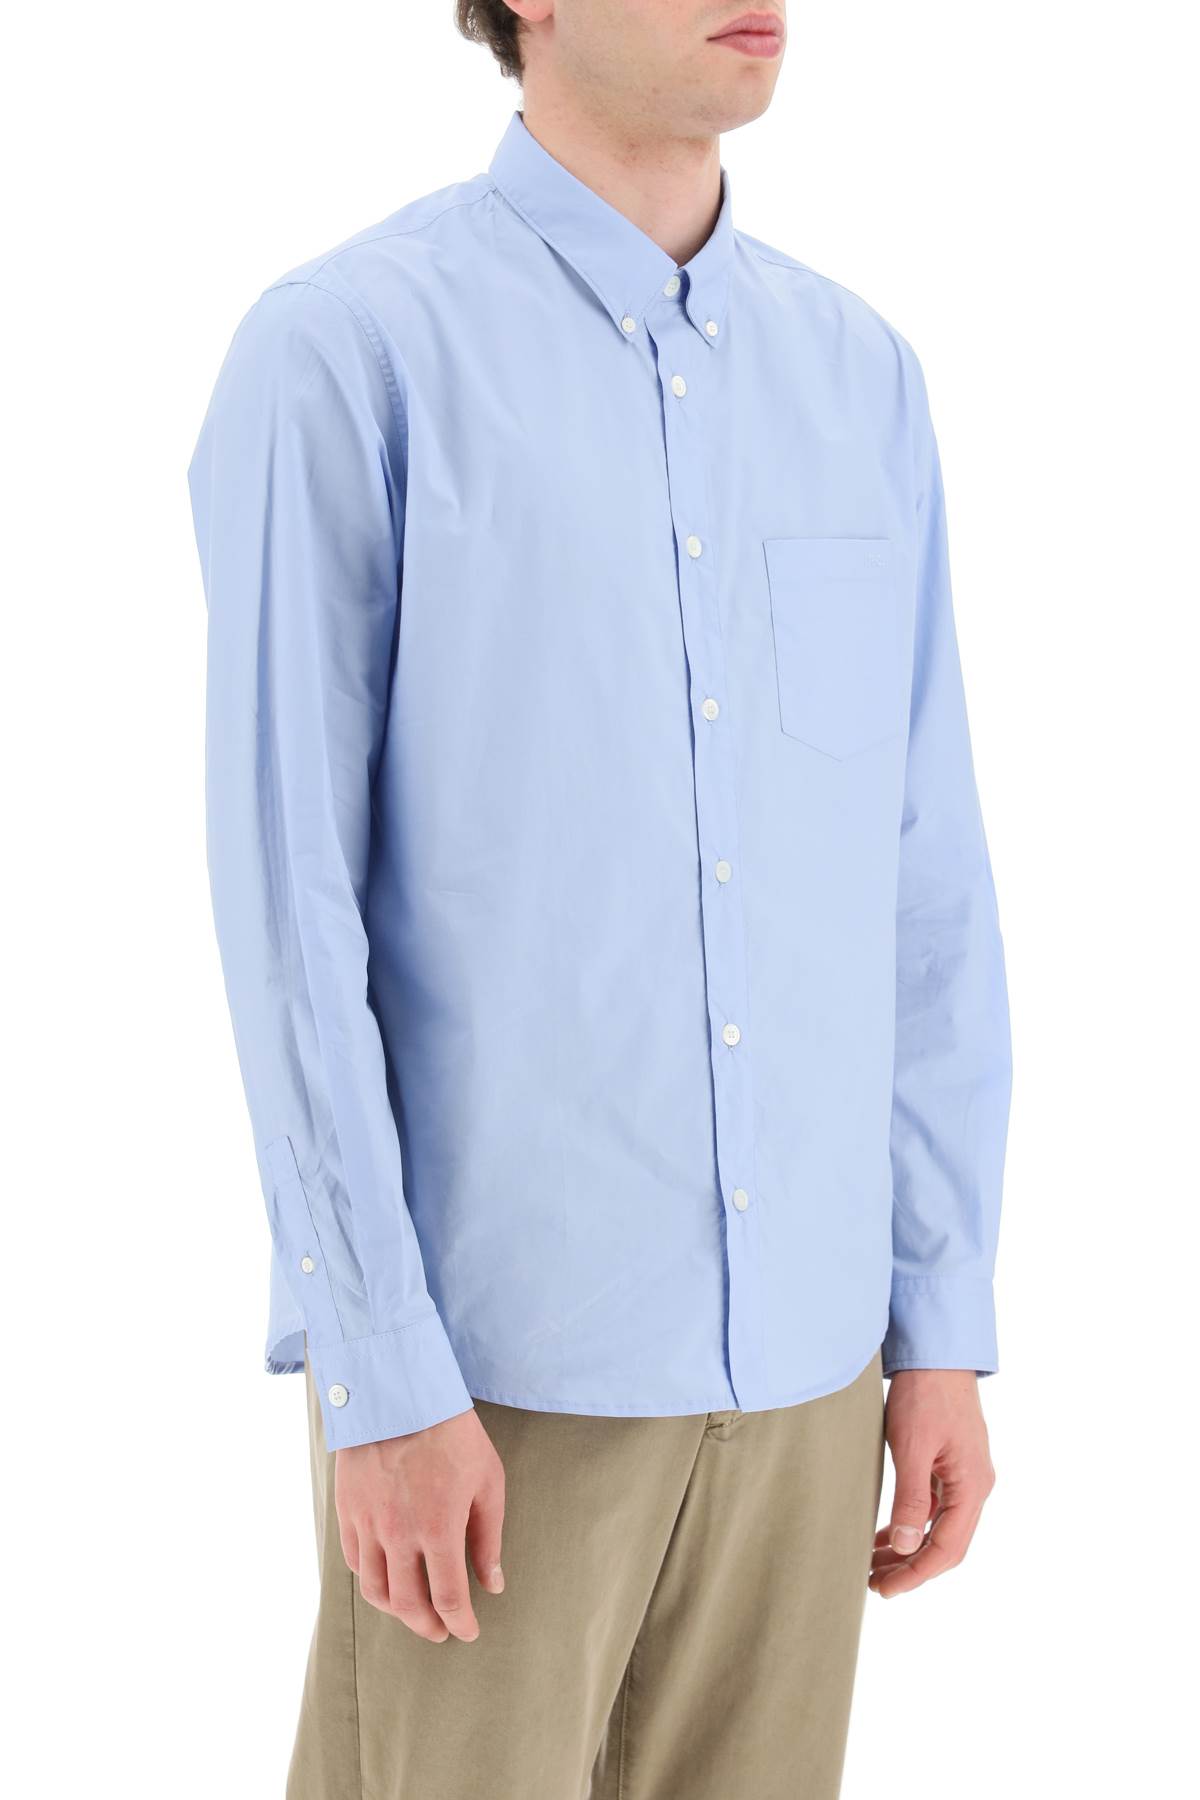 Shop Apc Edouard Shirt In Bleu Clair (light Blue)